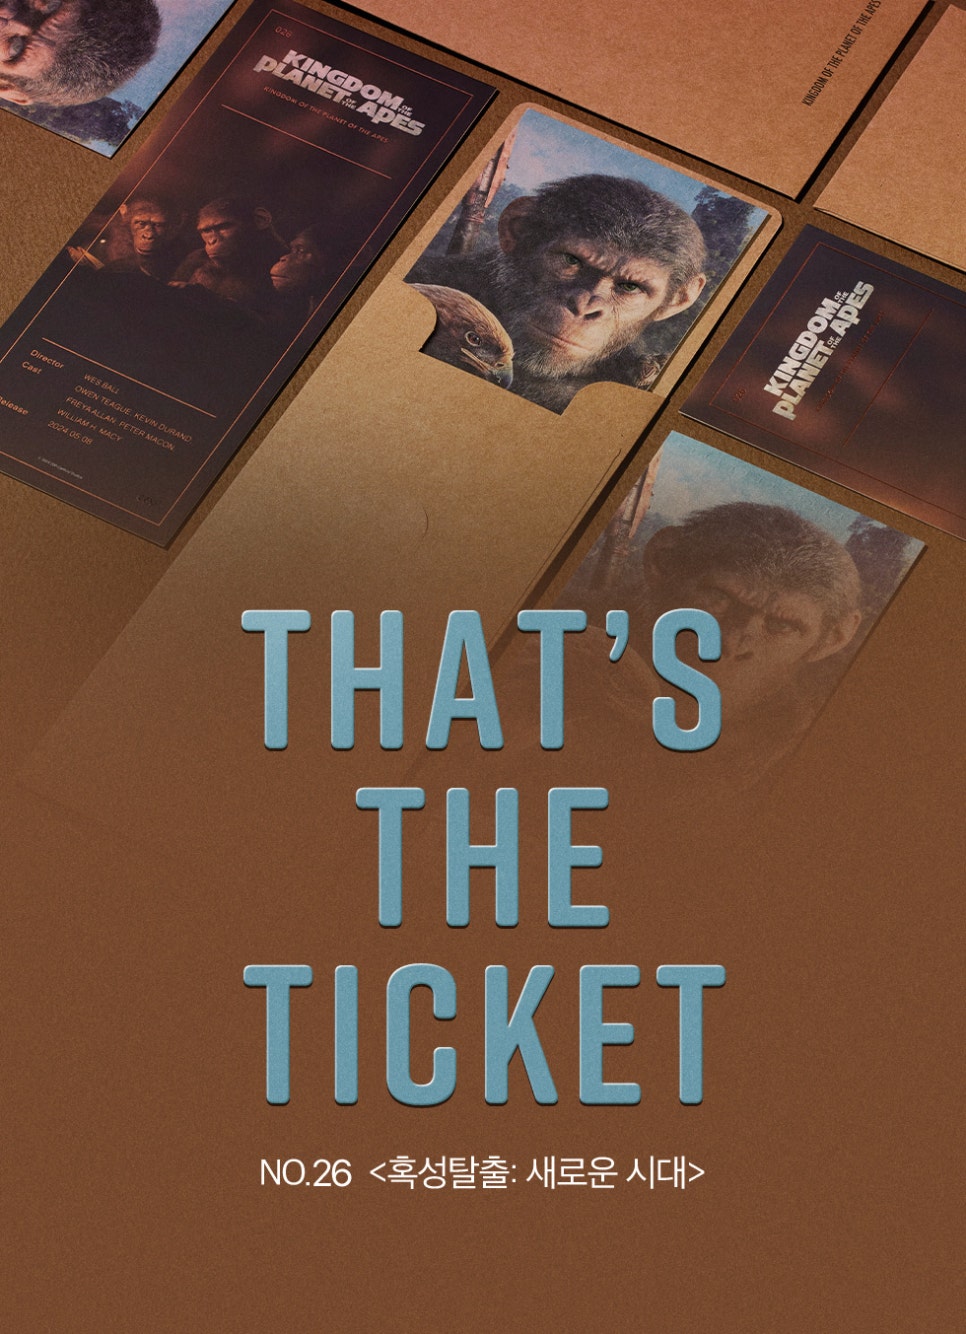 영화 혹성탈출 새로운 시대 1주차 특전 실물 TTT 아이맥스 4DX 스크린X 돌비 포스터 아트카드 스페셜 카드